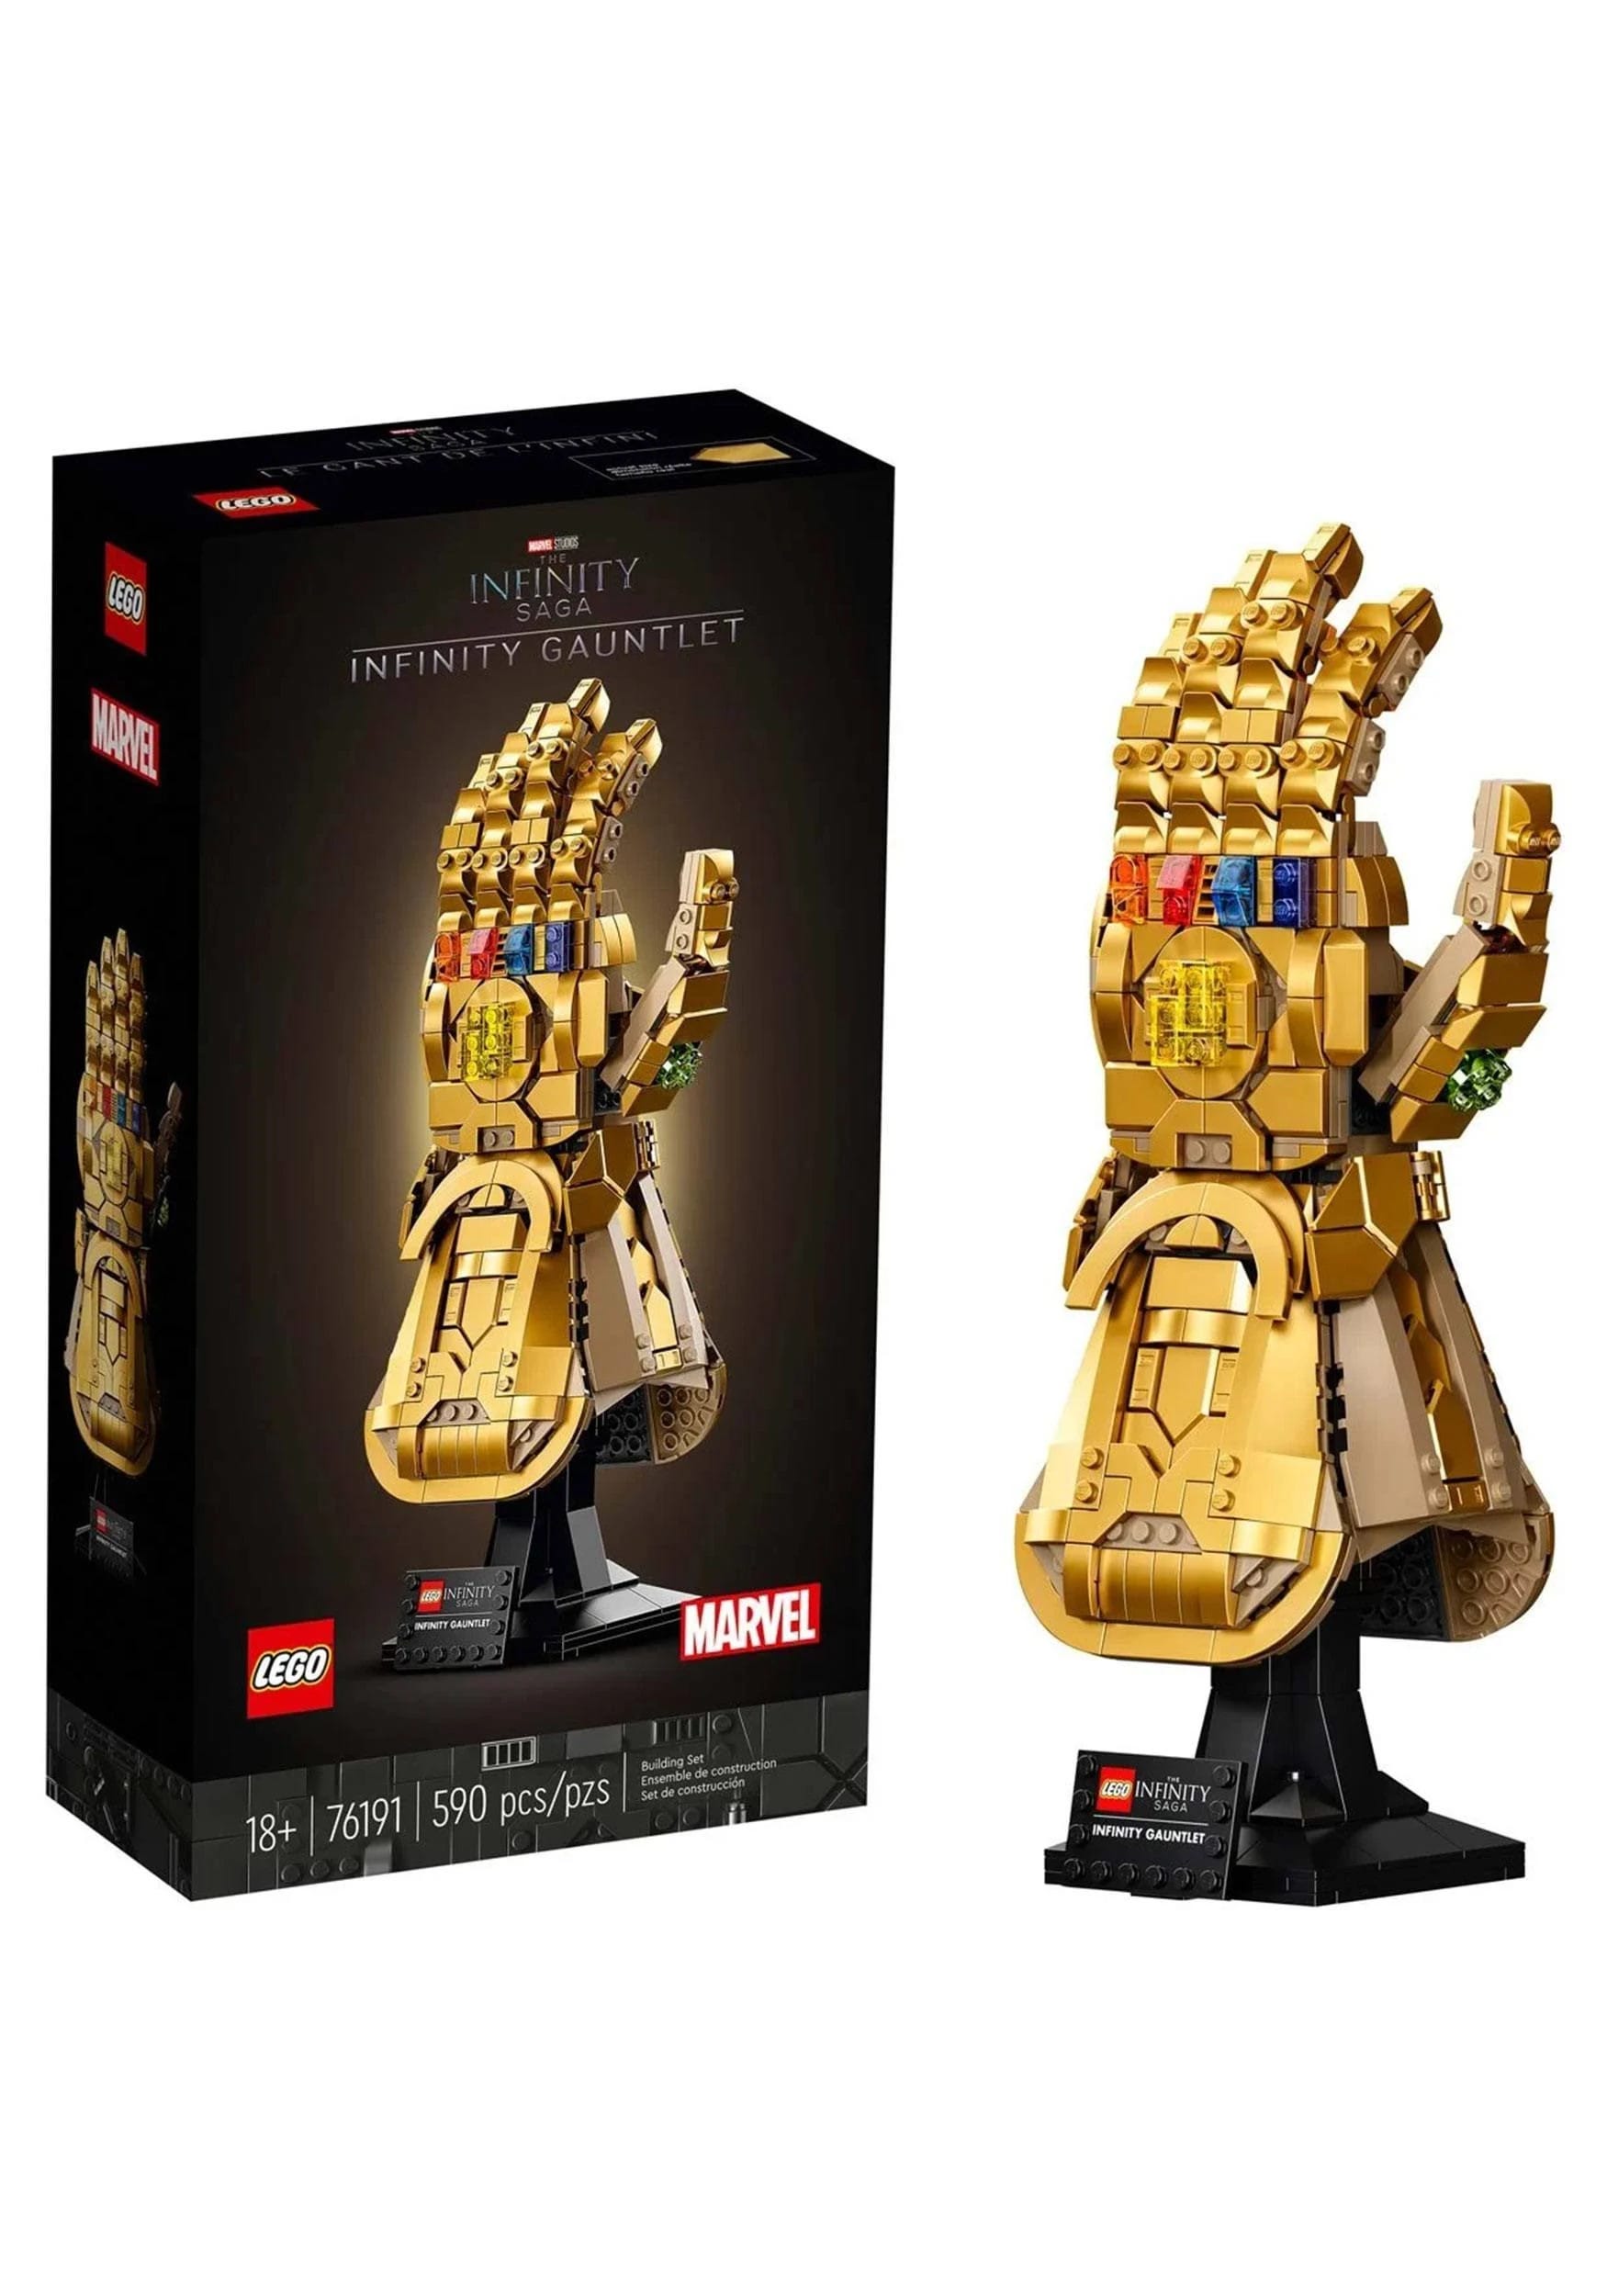 Infinity Gauntlet LEGO Set | Image